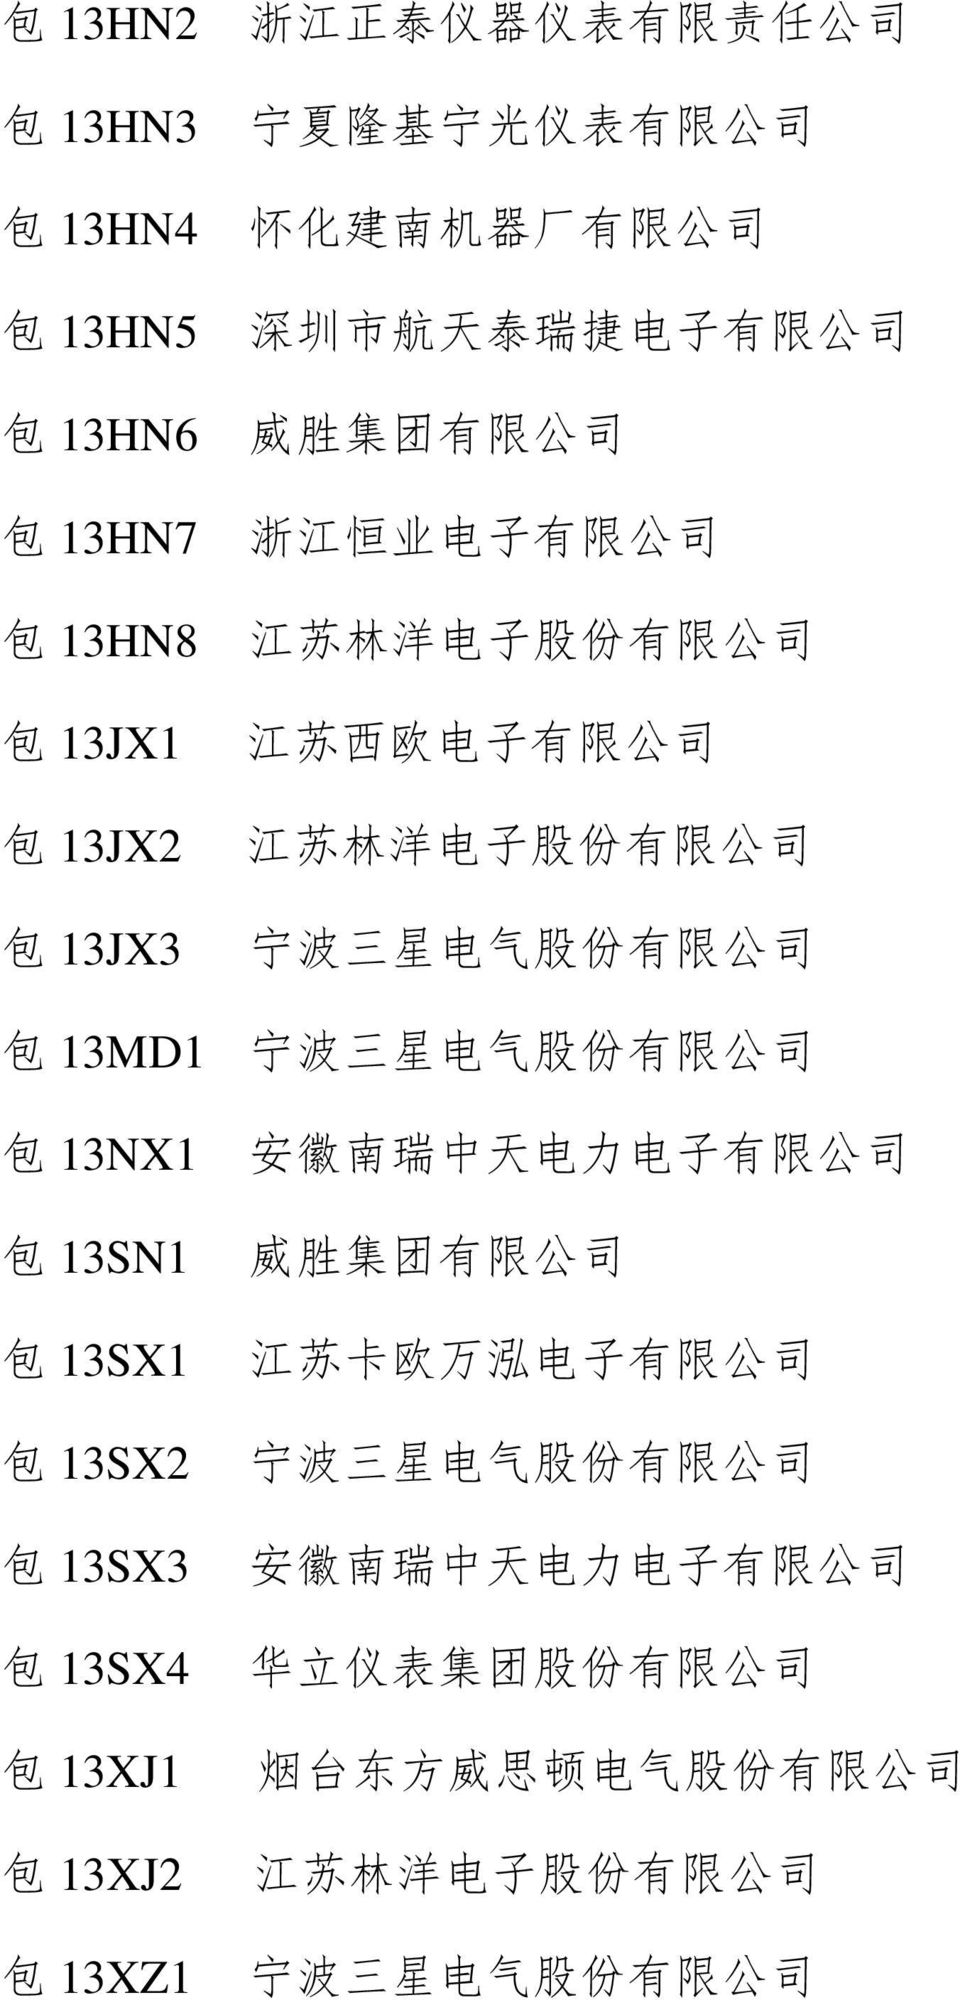 子 有 限 公 司 江 苏 西 欧 电 子 有 限 公 司 包 13MD1 包 13NX1 包 13SN1 包 13SX1 包 13SX2 包 13SX3 包 13SX4 包 13XJ1 包